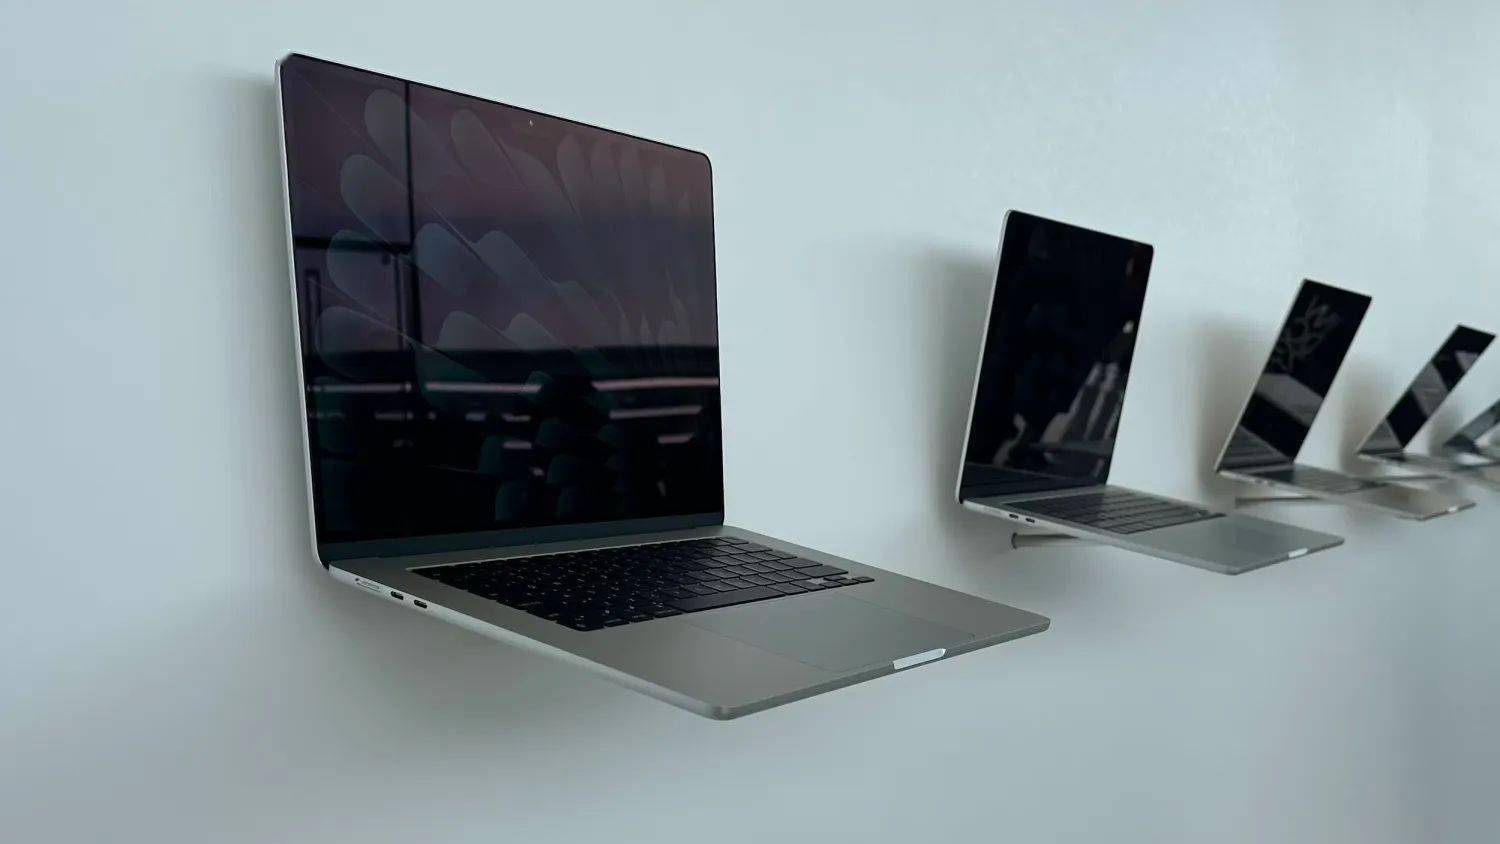 消息称苹果 3 月将推出新款 MacBook Air 笔记本 